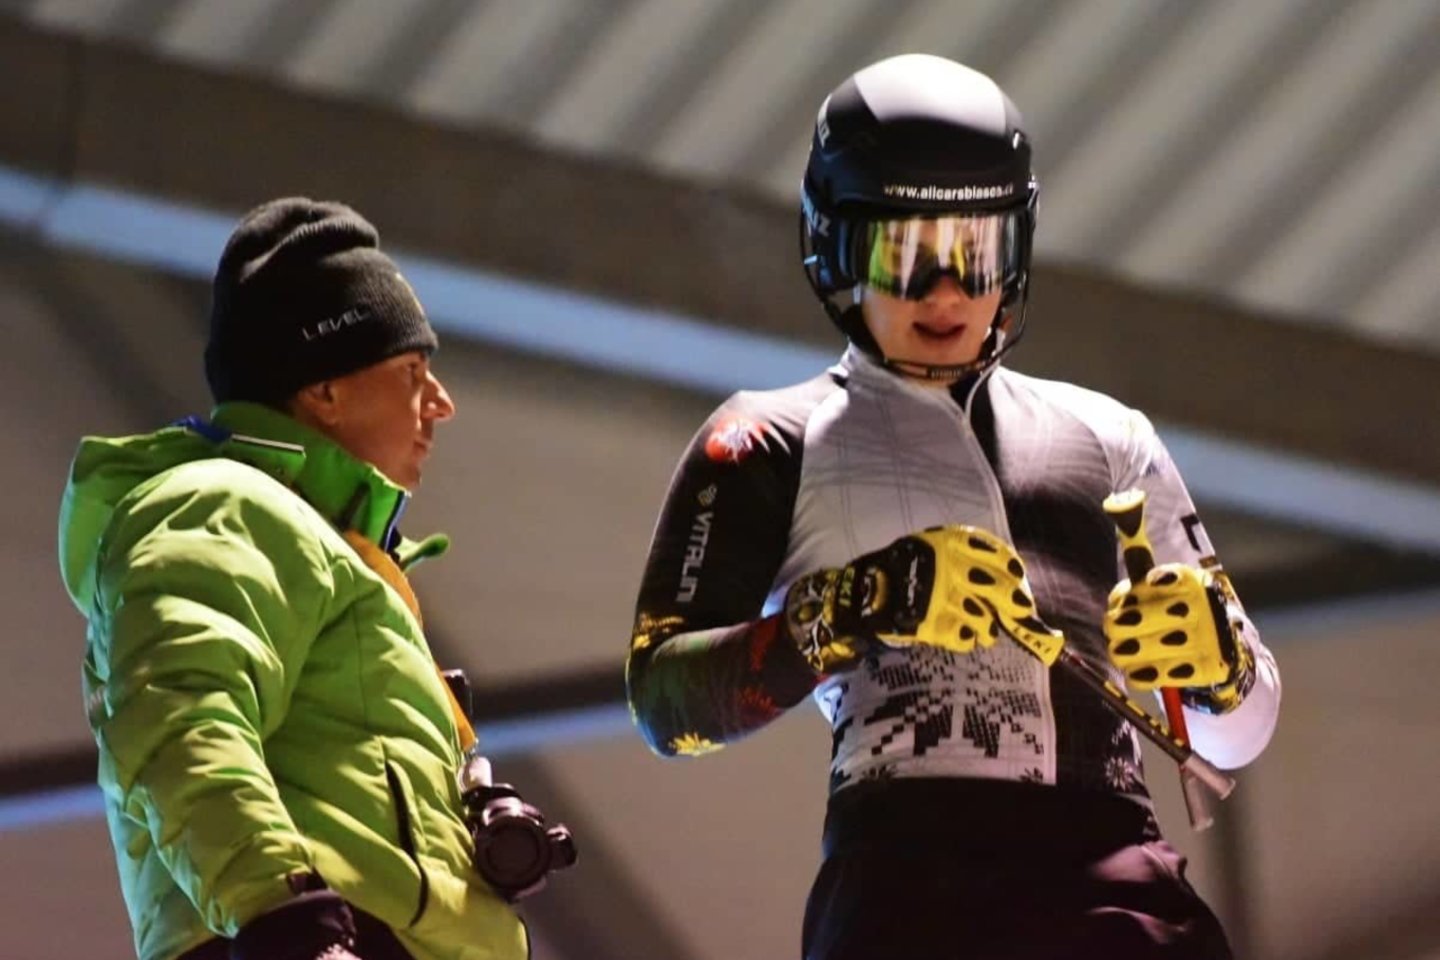  Geriausias Lietuvos kalnų slidininkas Andrejus Drukarovas žino, ką veiks kiekvieną dieną iki pat varžybų sezono pradžios rudenį.<br> A.Pustovito nuotr.